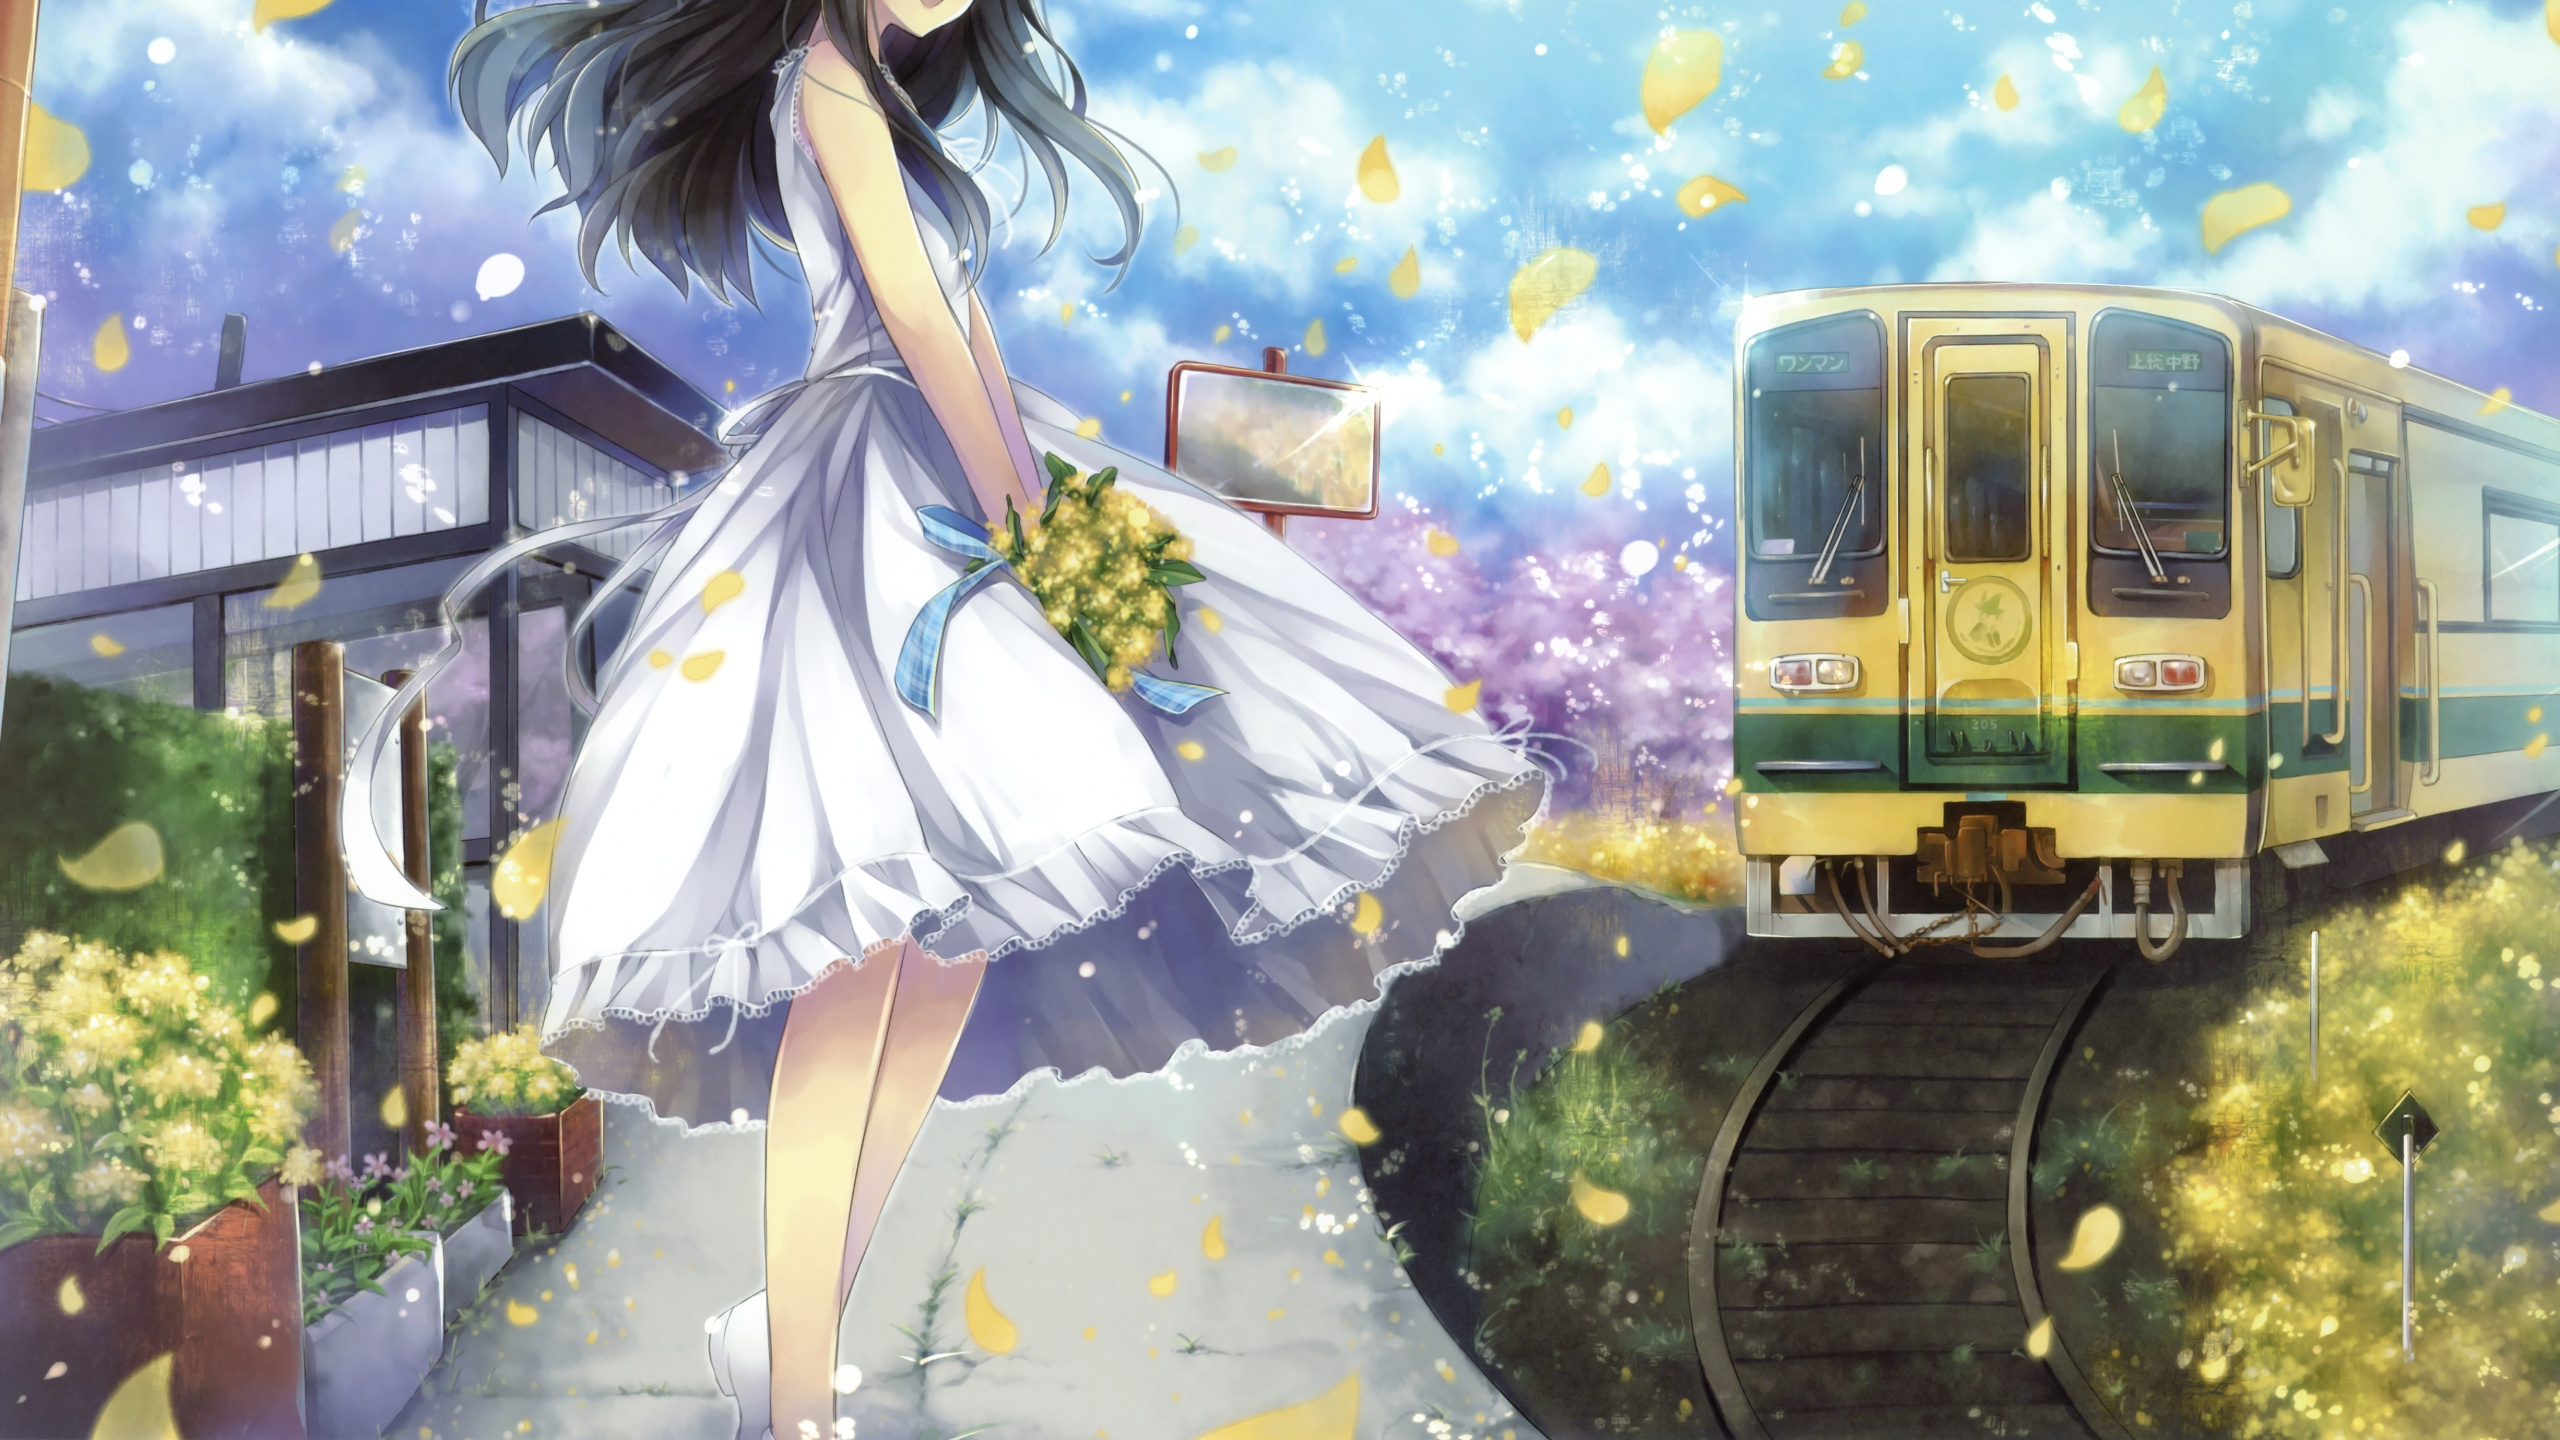 Vestido de Verano Chica Anime, Anime, Vestido, Tren, Caricatura. Wallpaper in 2560x1440 Resolution